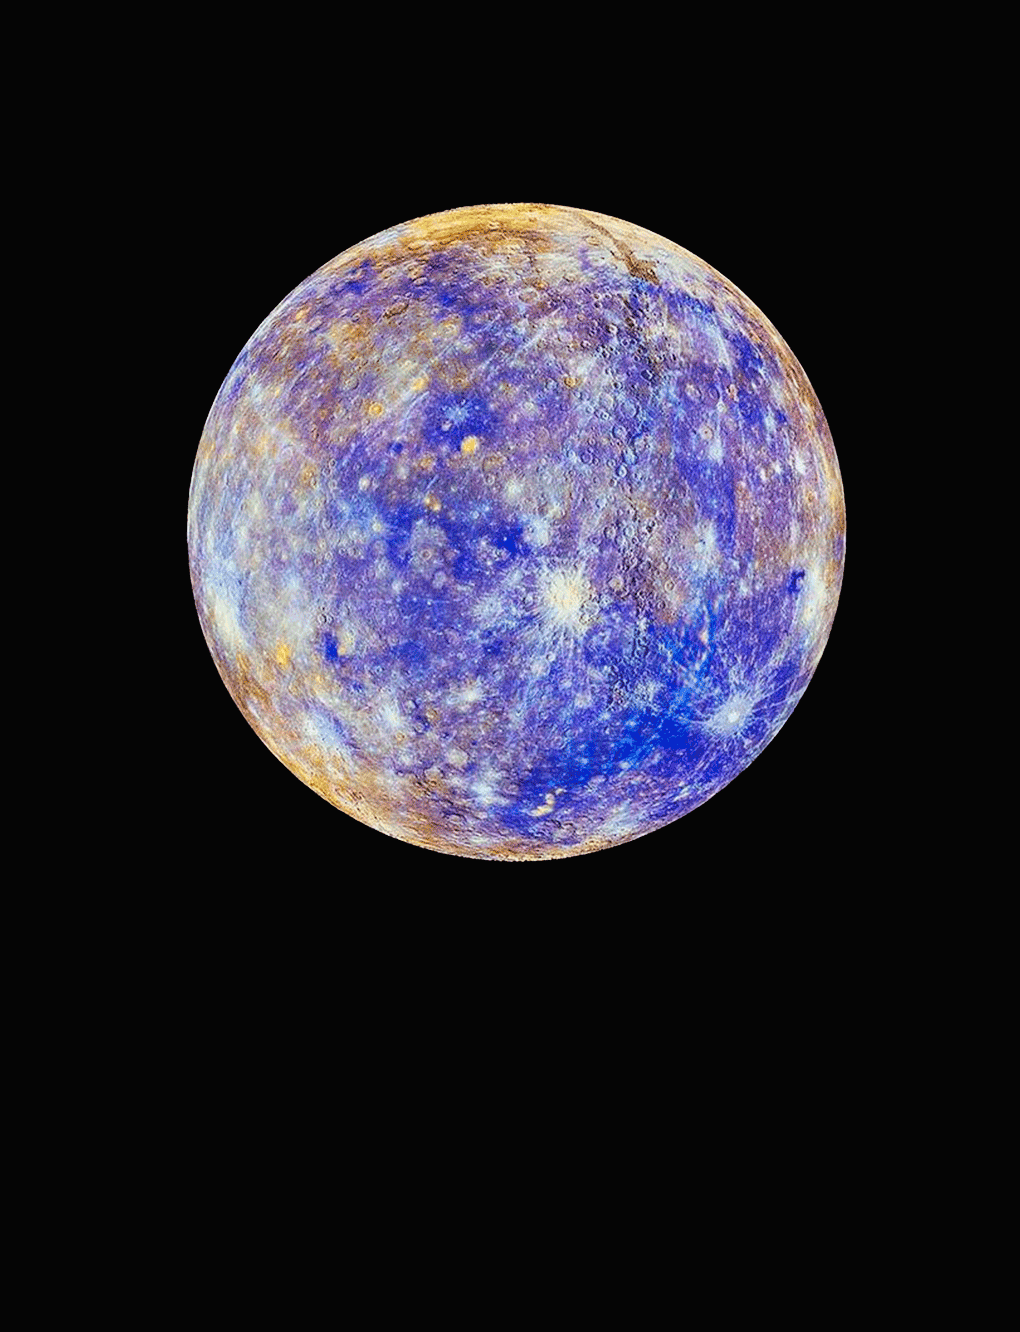 Mercúrio